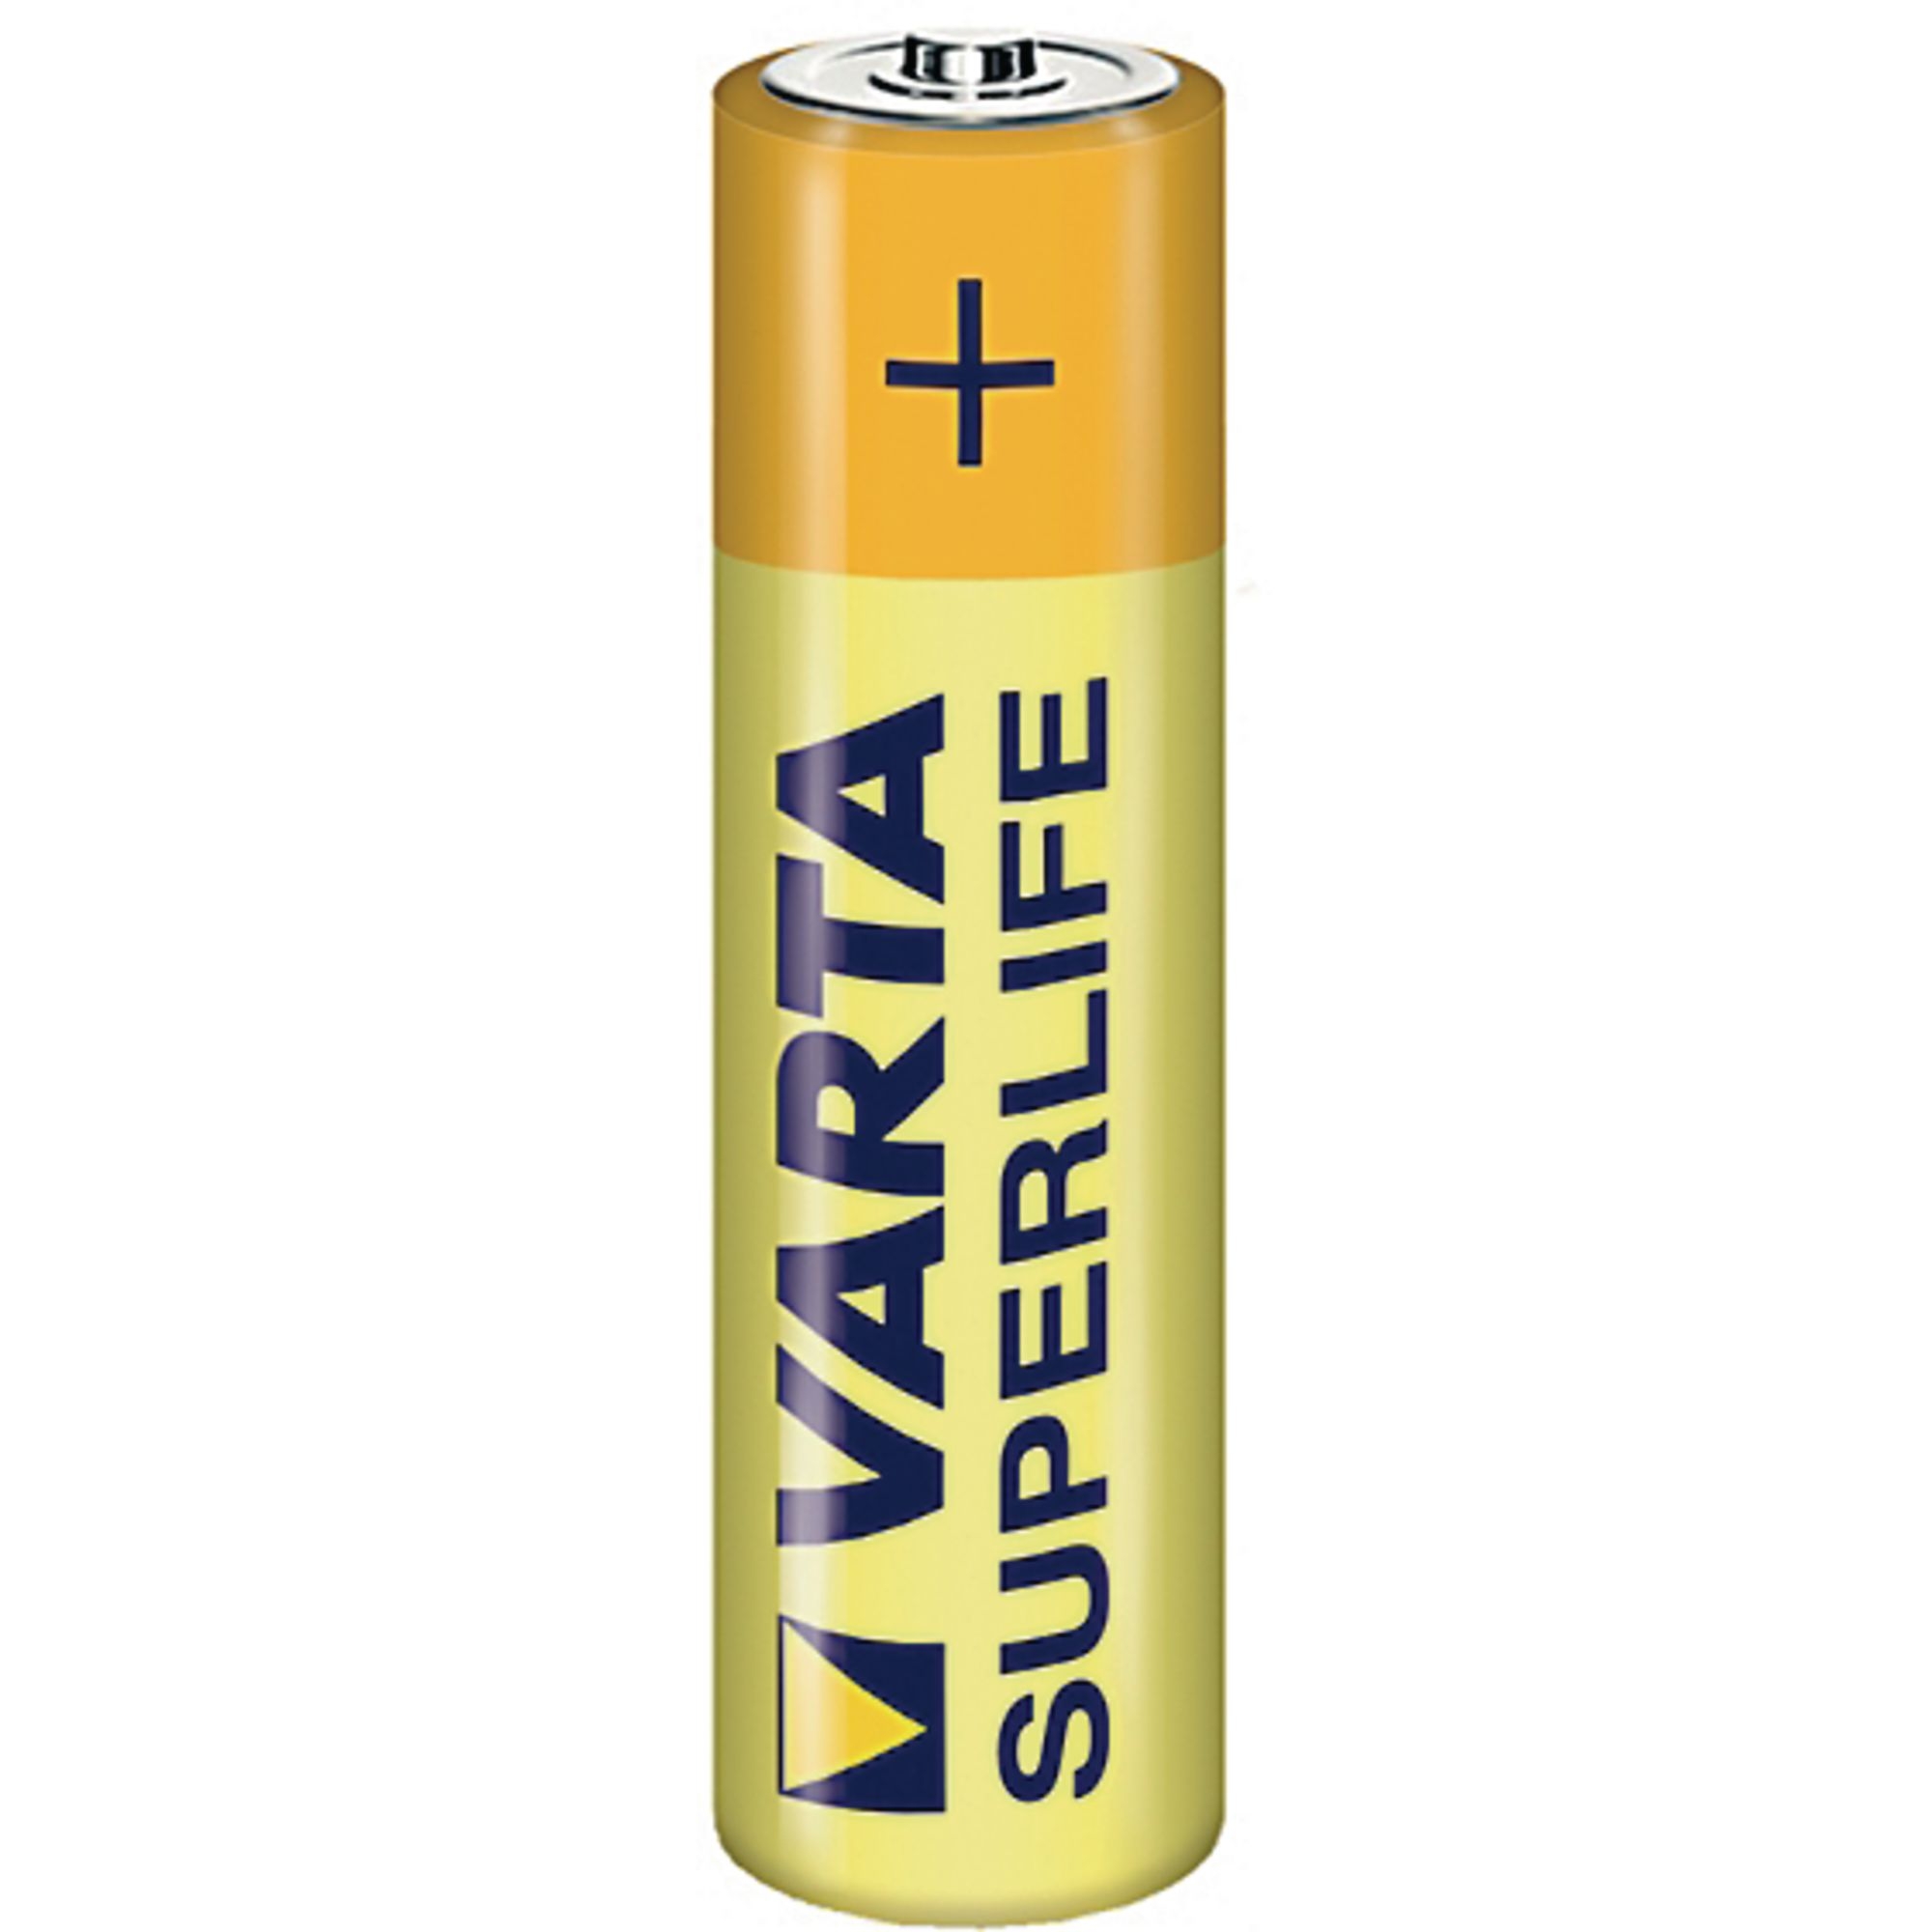 High Power Zinc Chloride Battery - AAA, R03